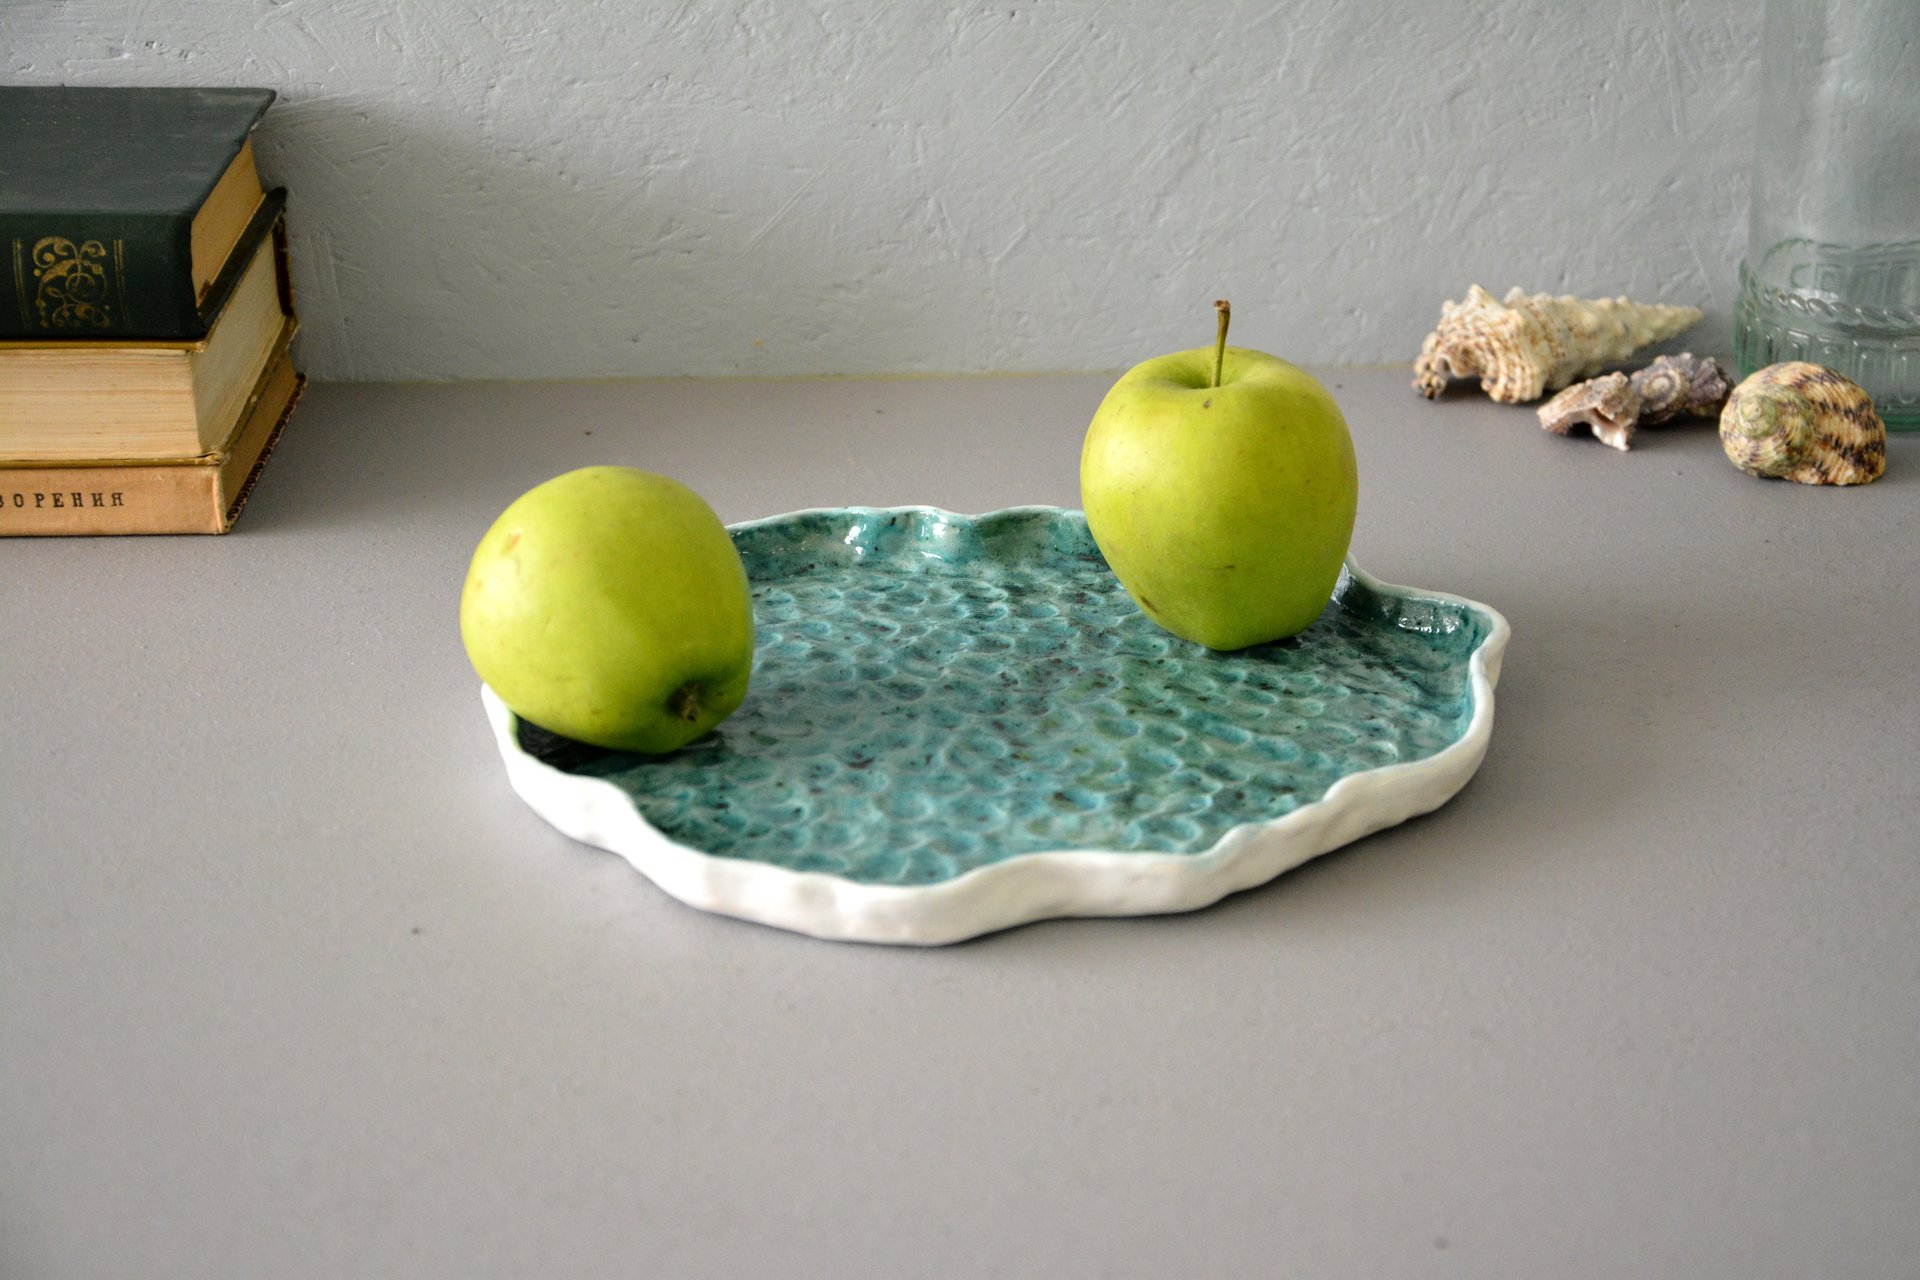 Кусочек моря - Керамические тарелки, 23 * 24,5 см, фото 1 из 4.